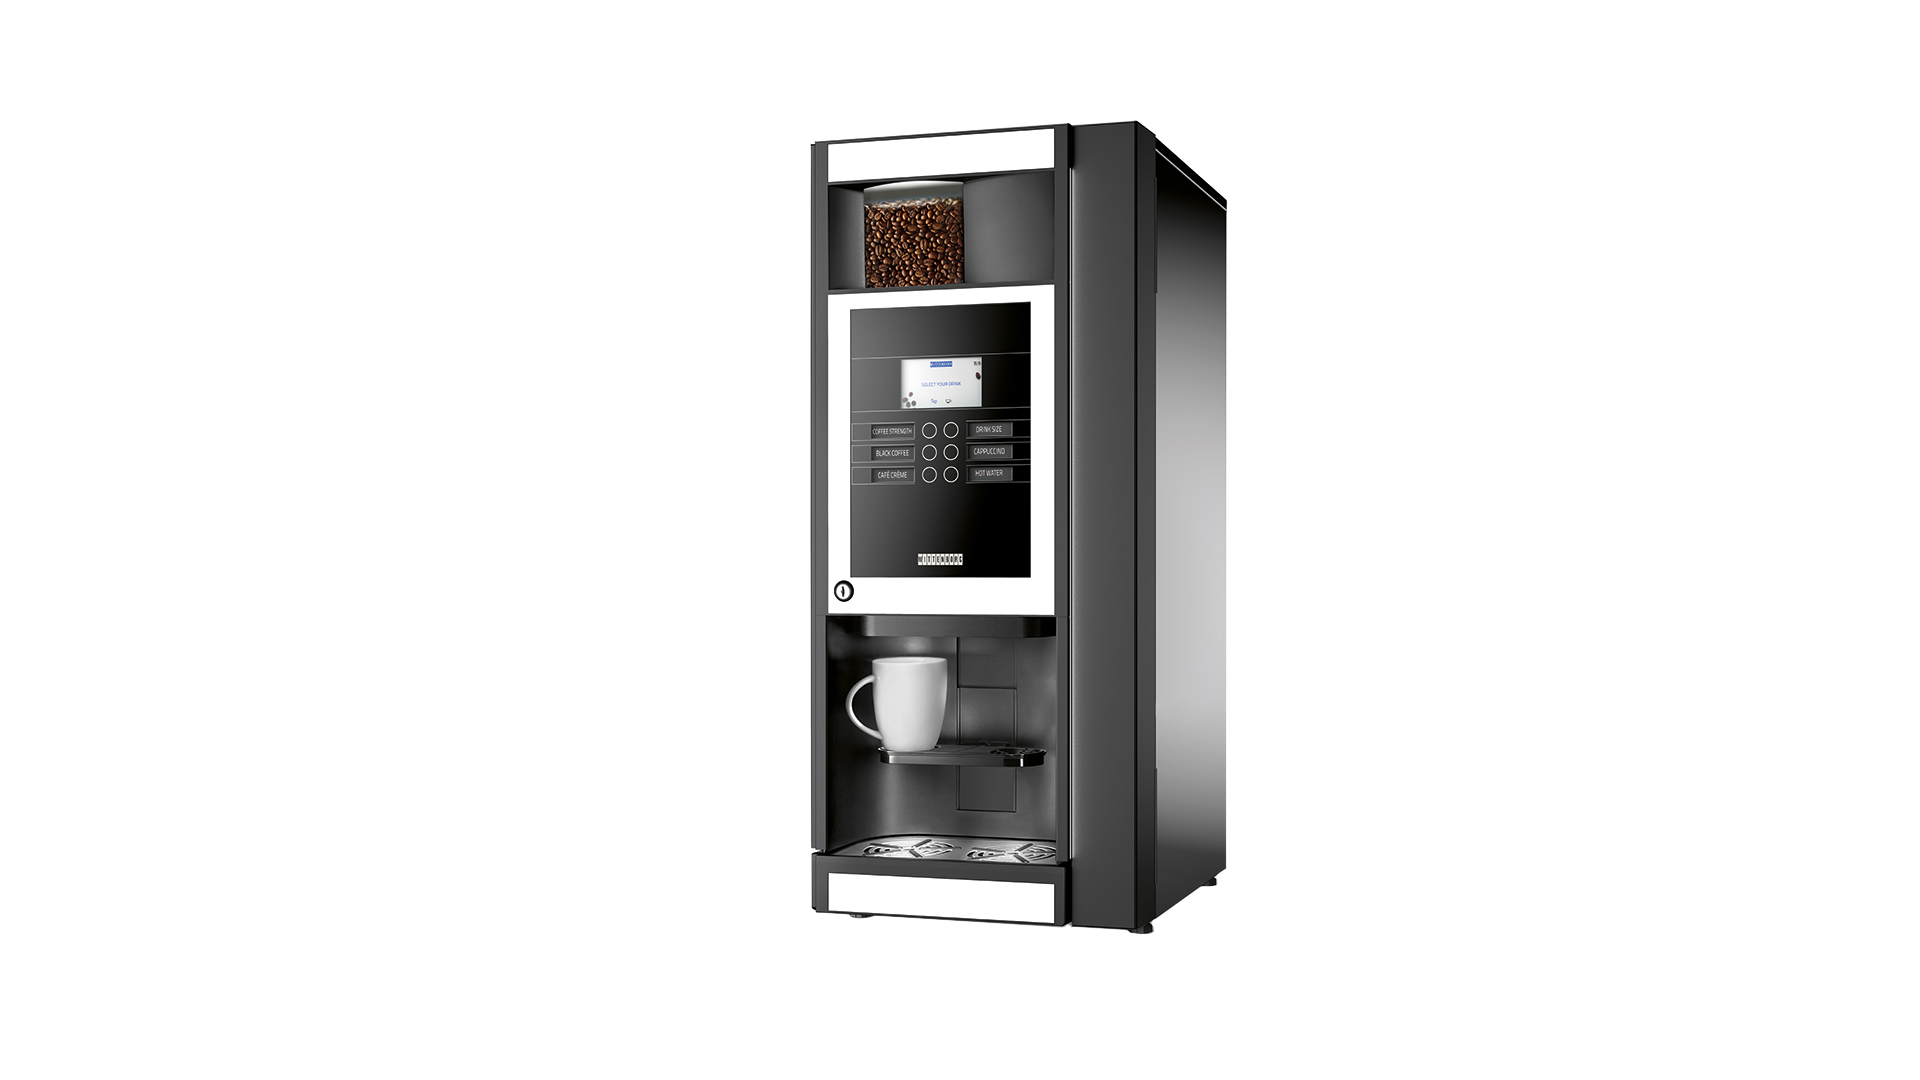 Begrænsninger Bi ensom Kompakt energieffektiv god kaffe 25-50 pers Bentax